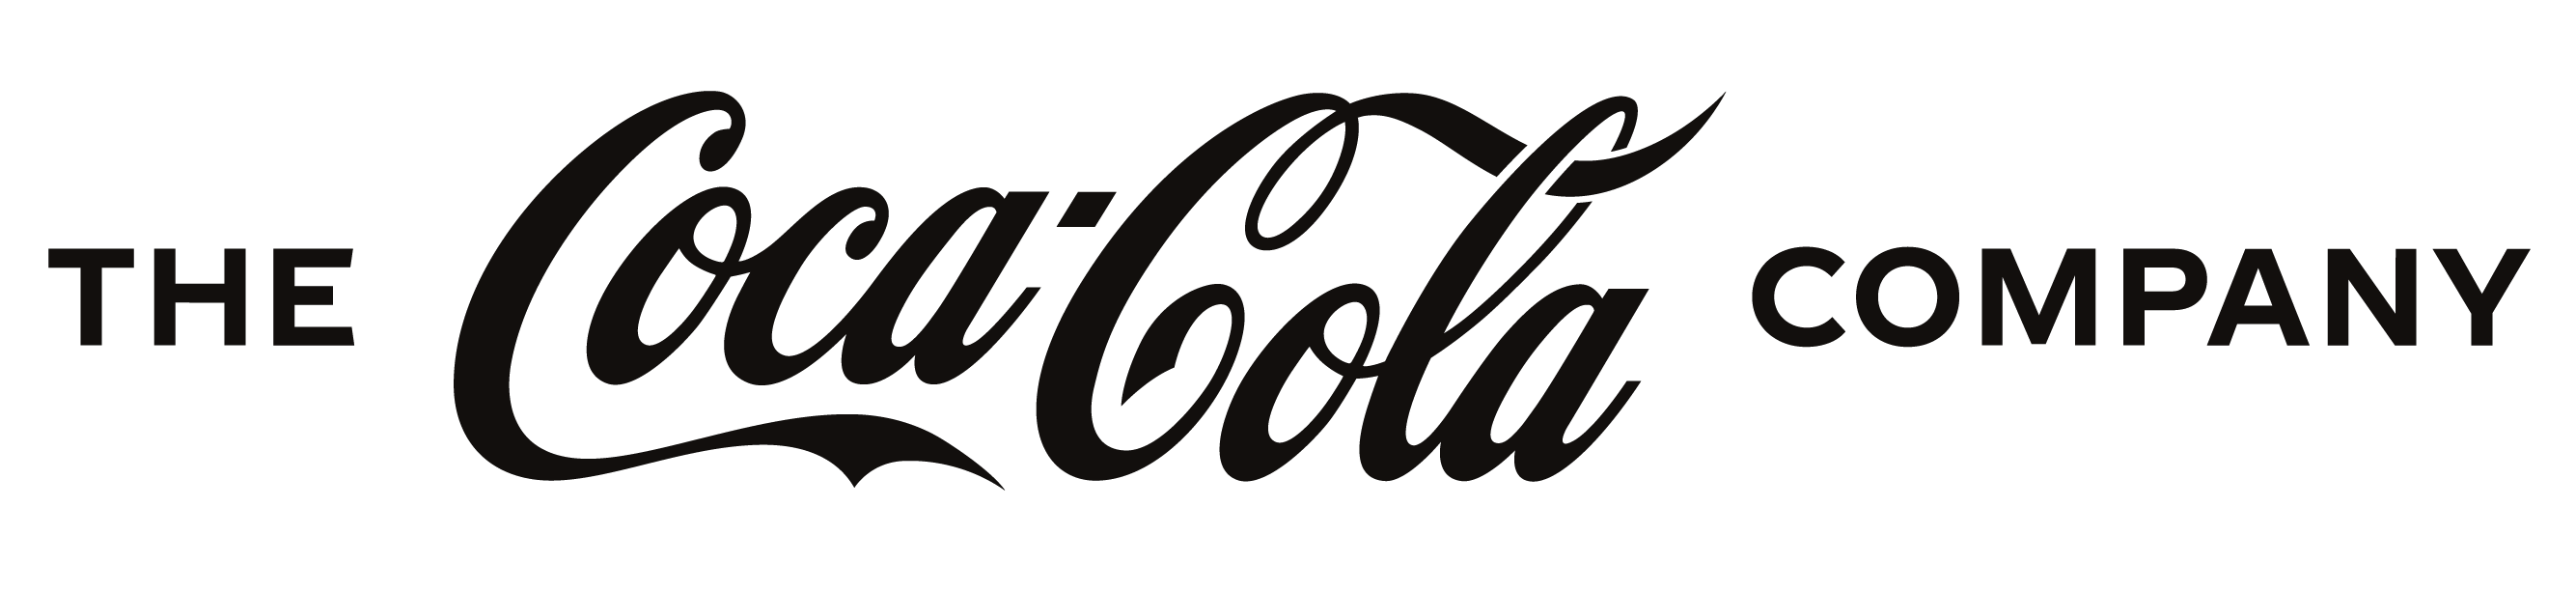 The Coca-Cola company logo